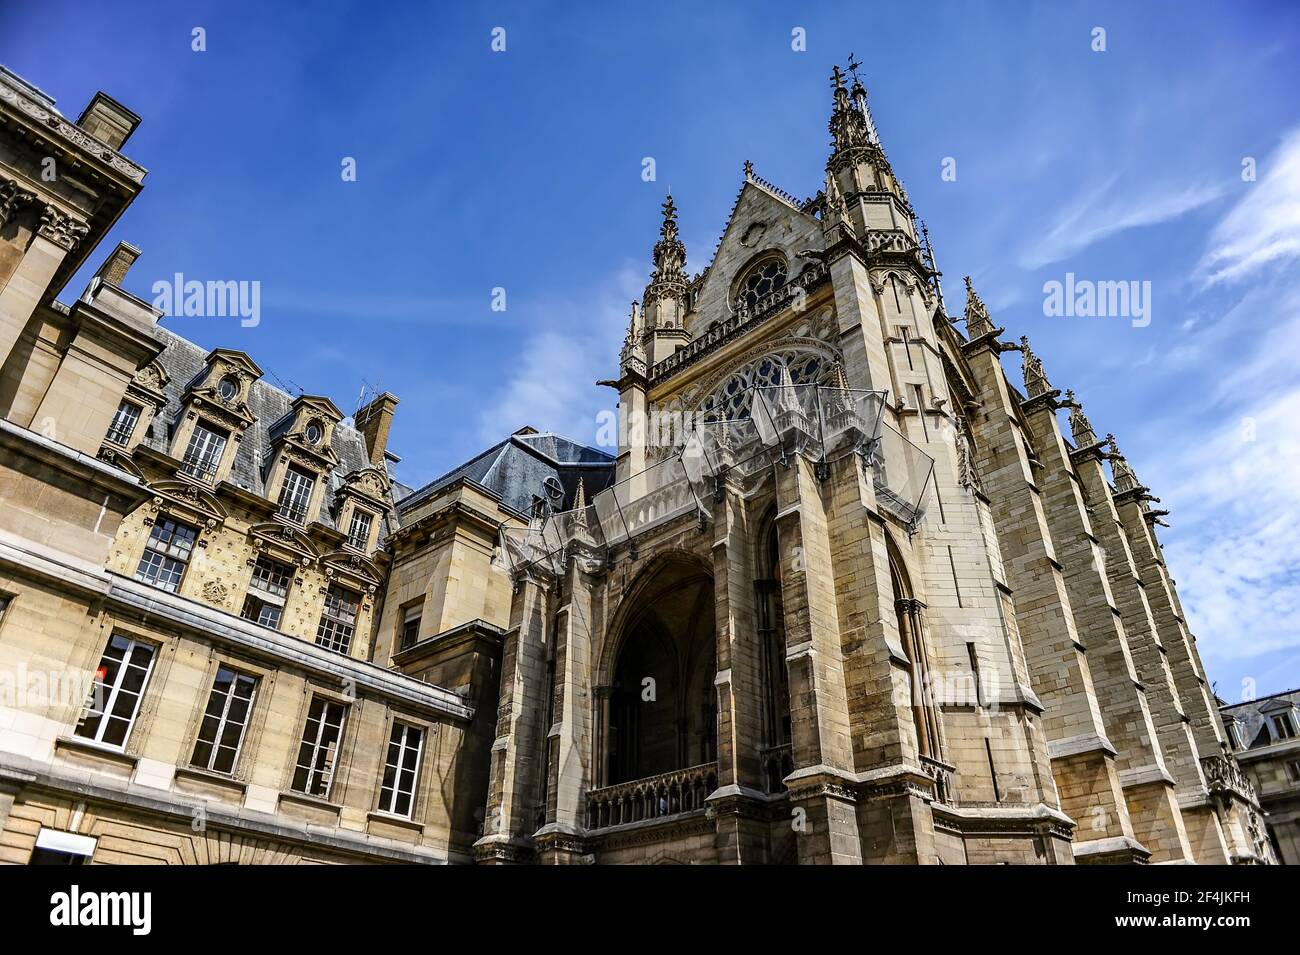 Paris, France - July 18, 2019: Sainte Chapelle royal chapel in Paris, France Stock Photo